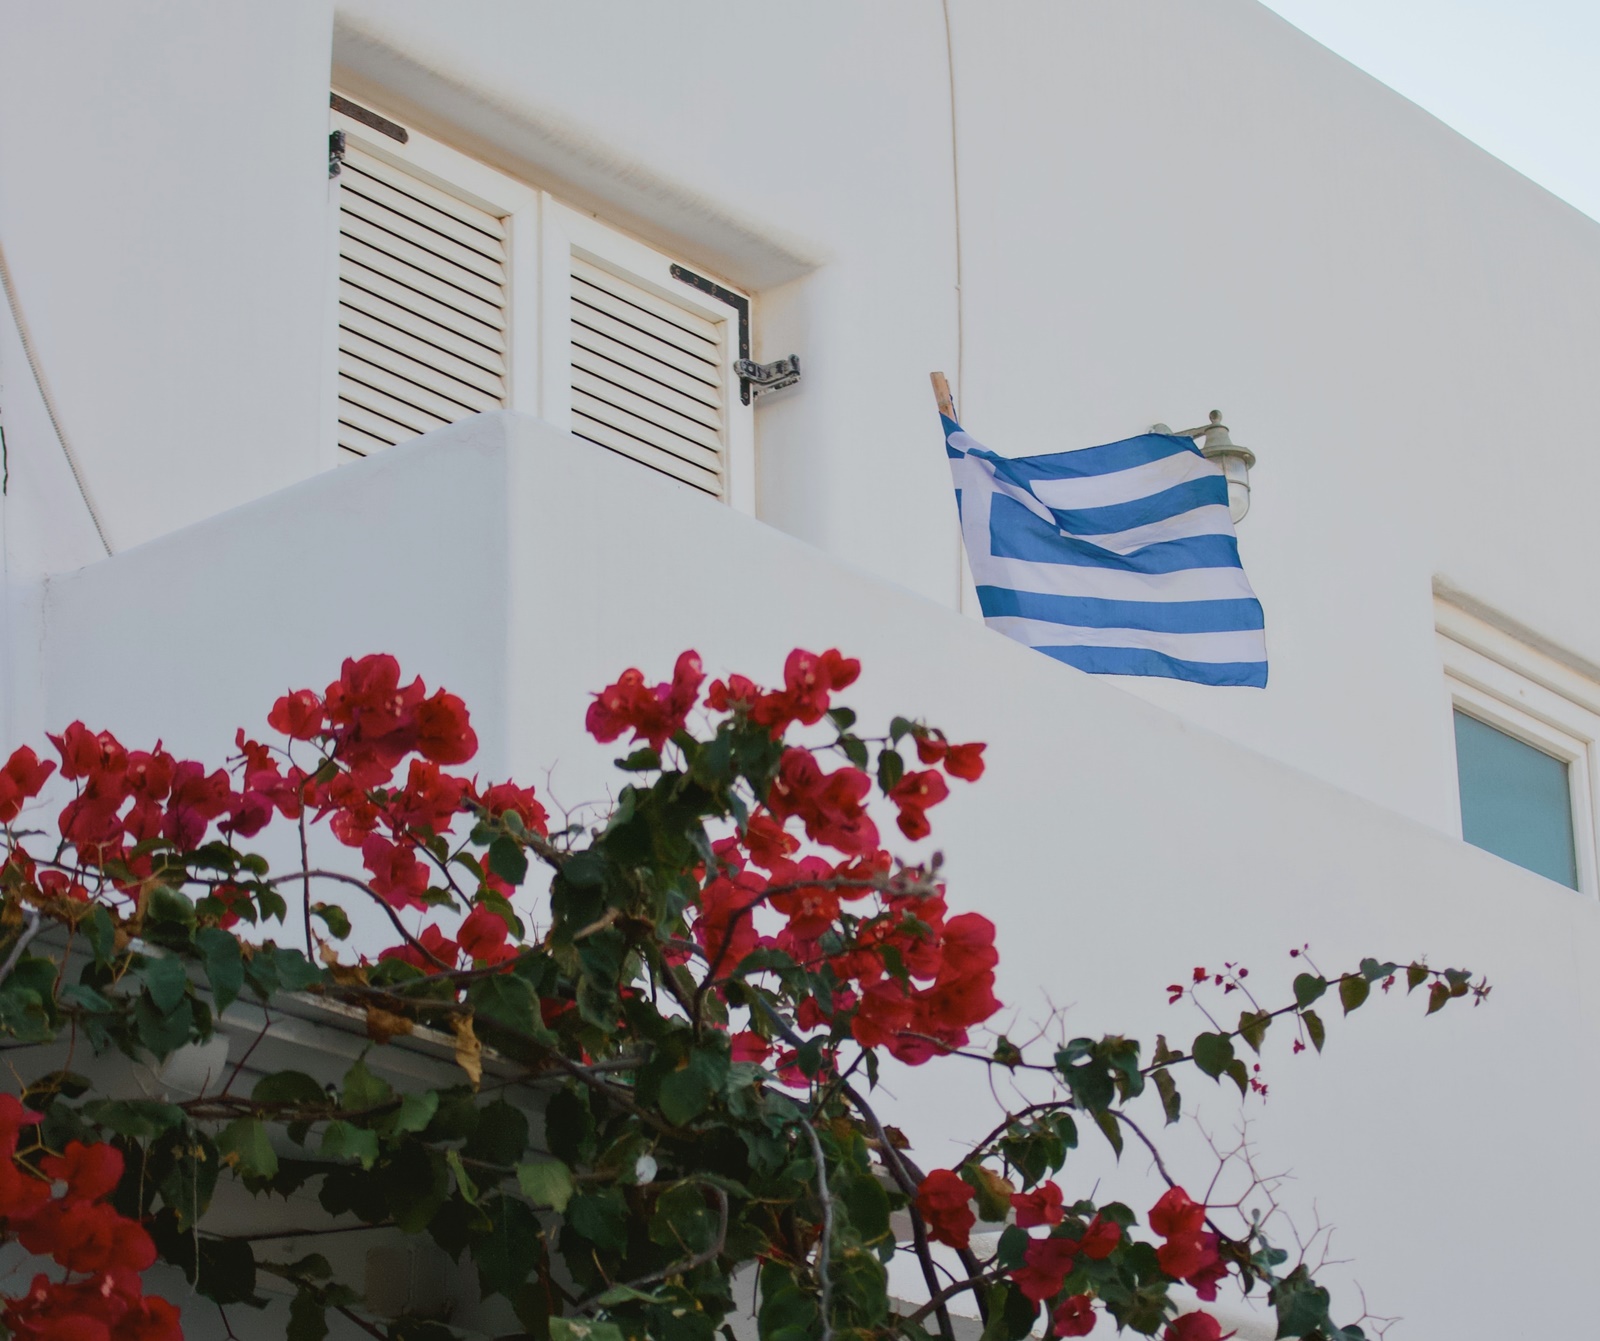 Σαν σήμερα 13 Ιανουαρίου: Η γαλανόλευκη, επίσημο σύμβολο του επαναστατημένου γένους των Ελλήνων